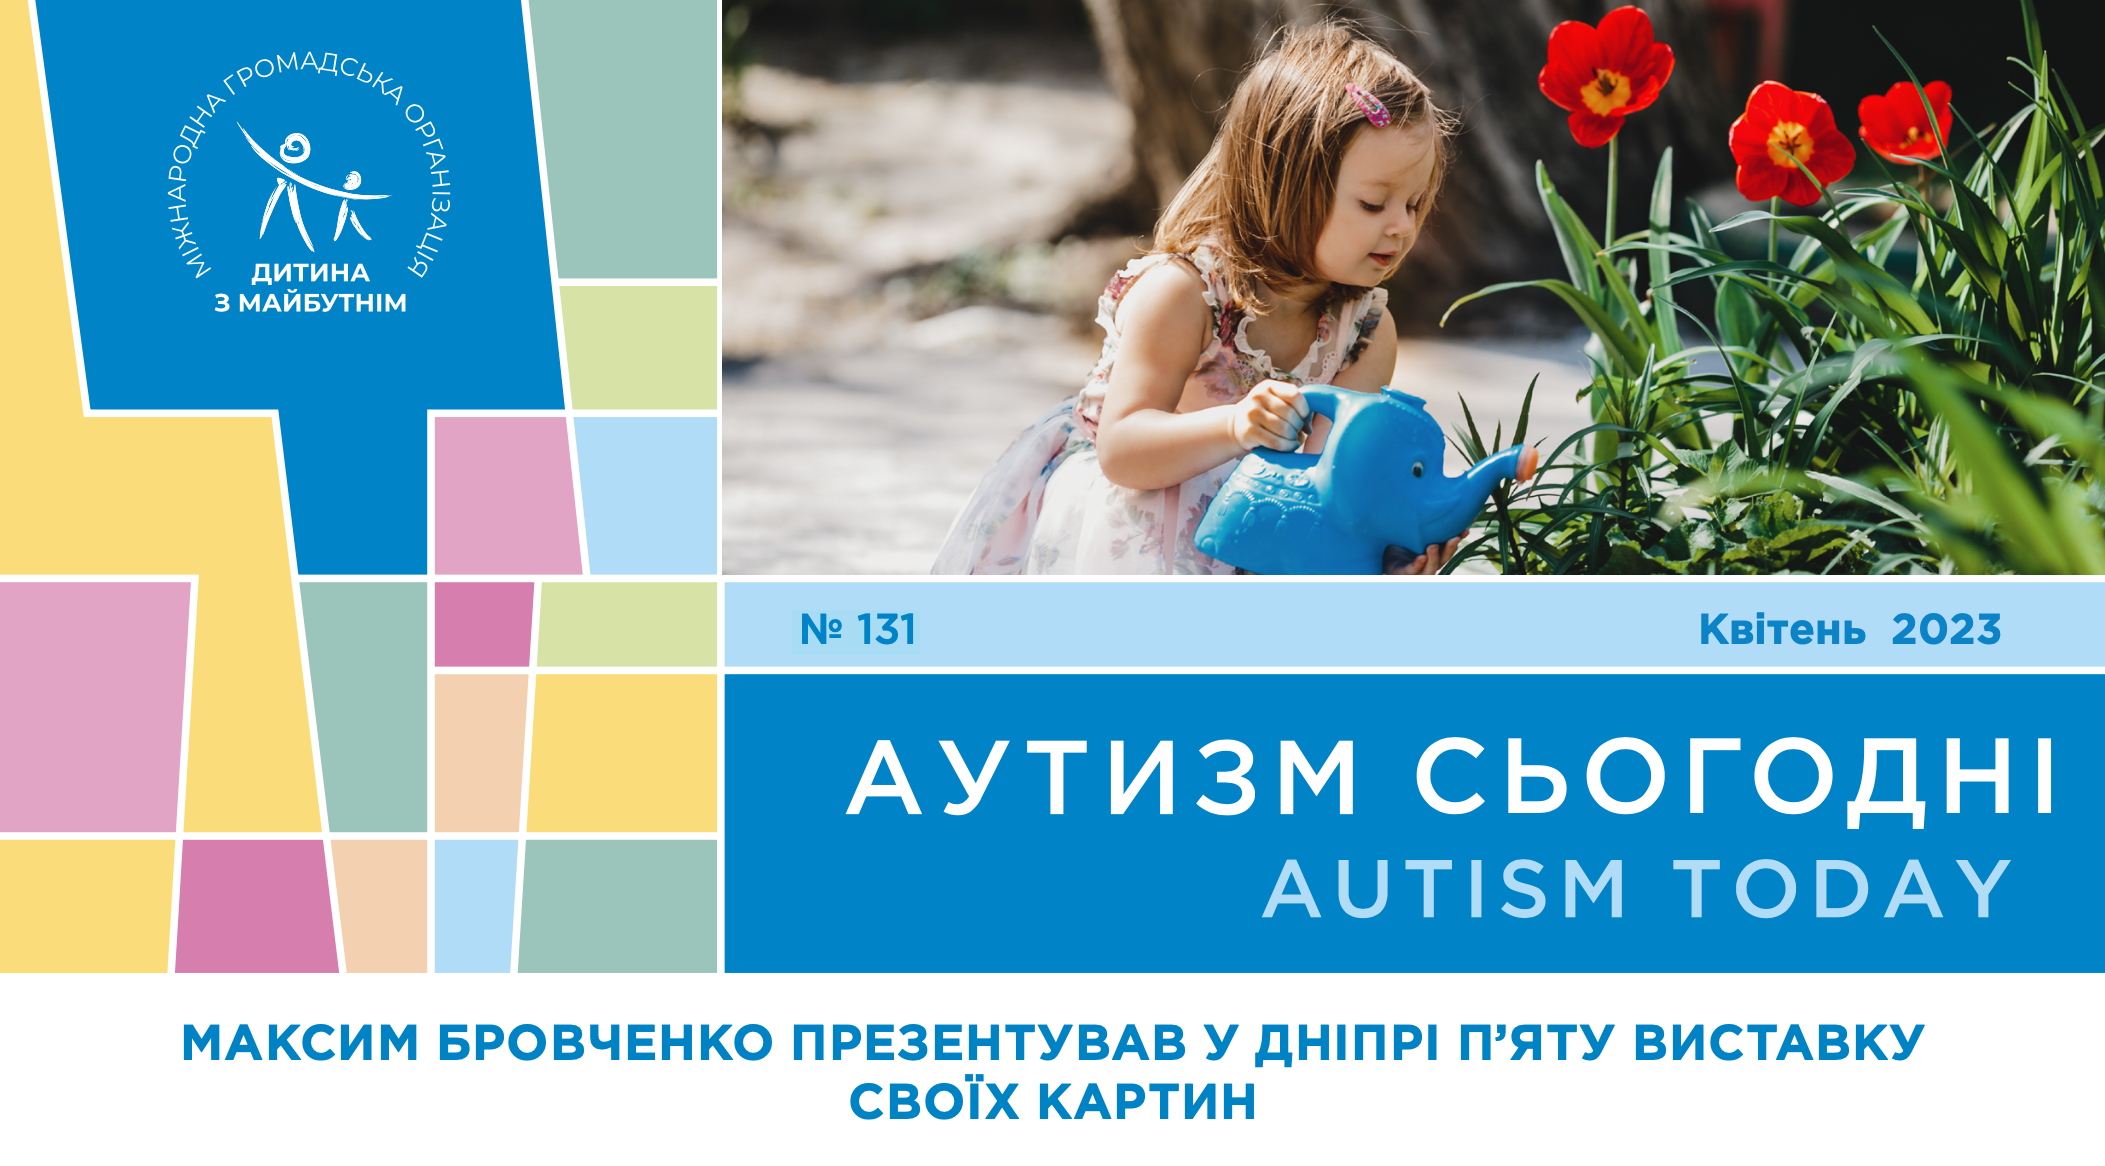 П’ята виставка Максима Бровченка, конференція з аутизму про систему раннього втручання та диво з Фінляндії – на сторінках квітневого випуску “Аутизм Сьогодні”